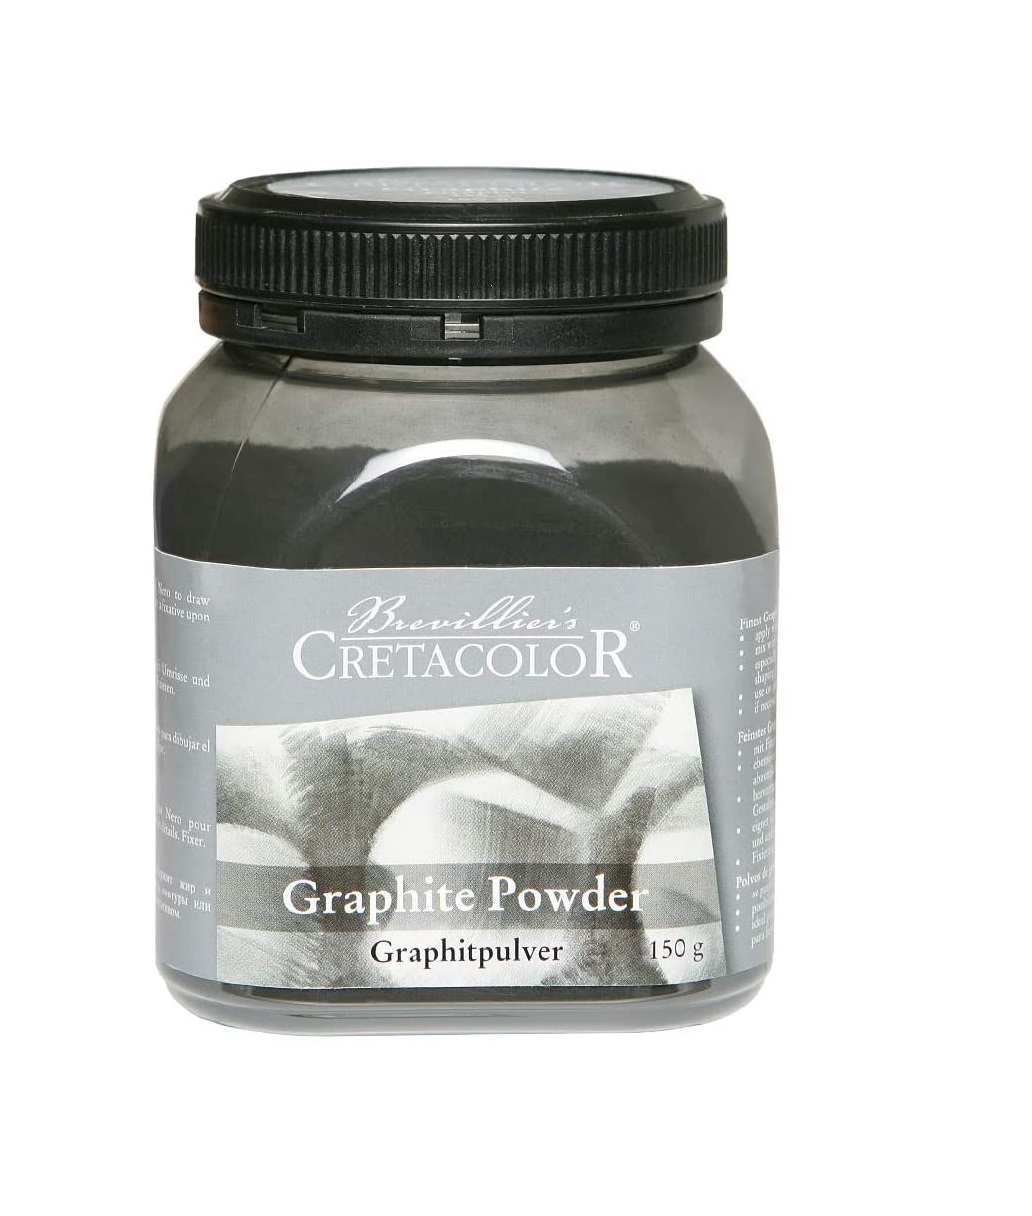 Cretacolor Graphite Powder 150G Jar